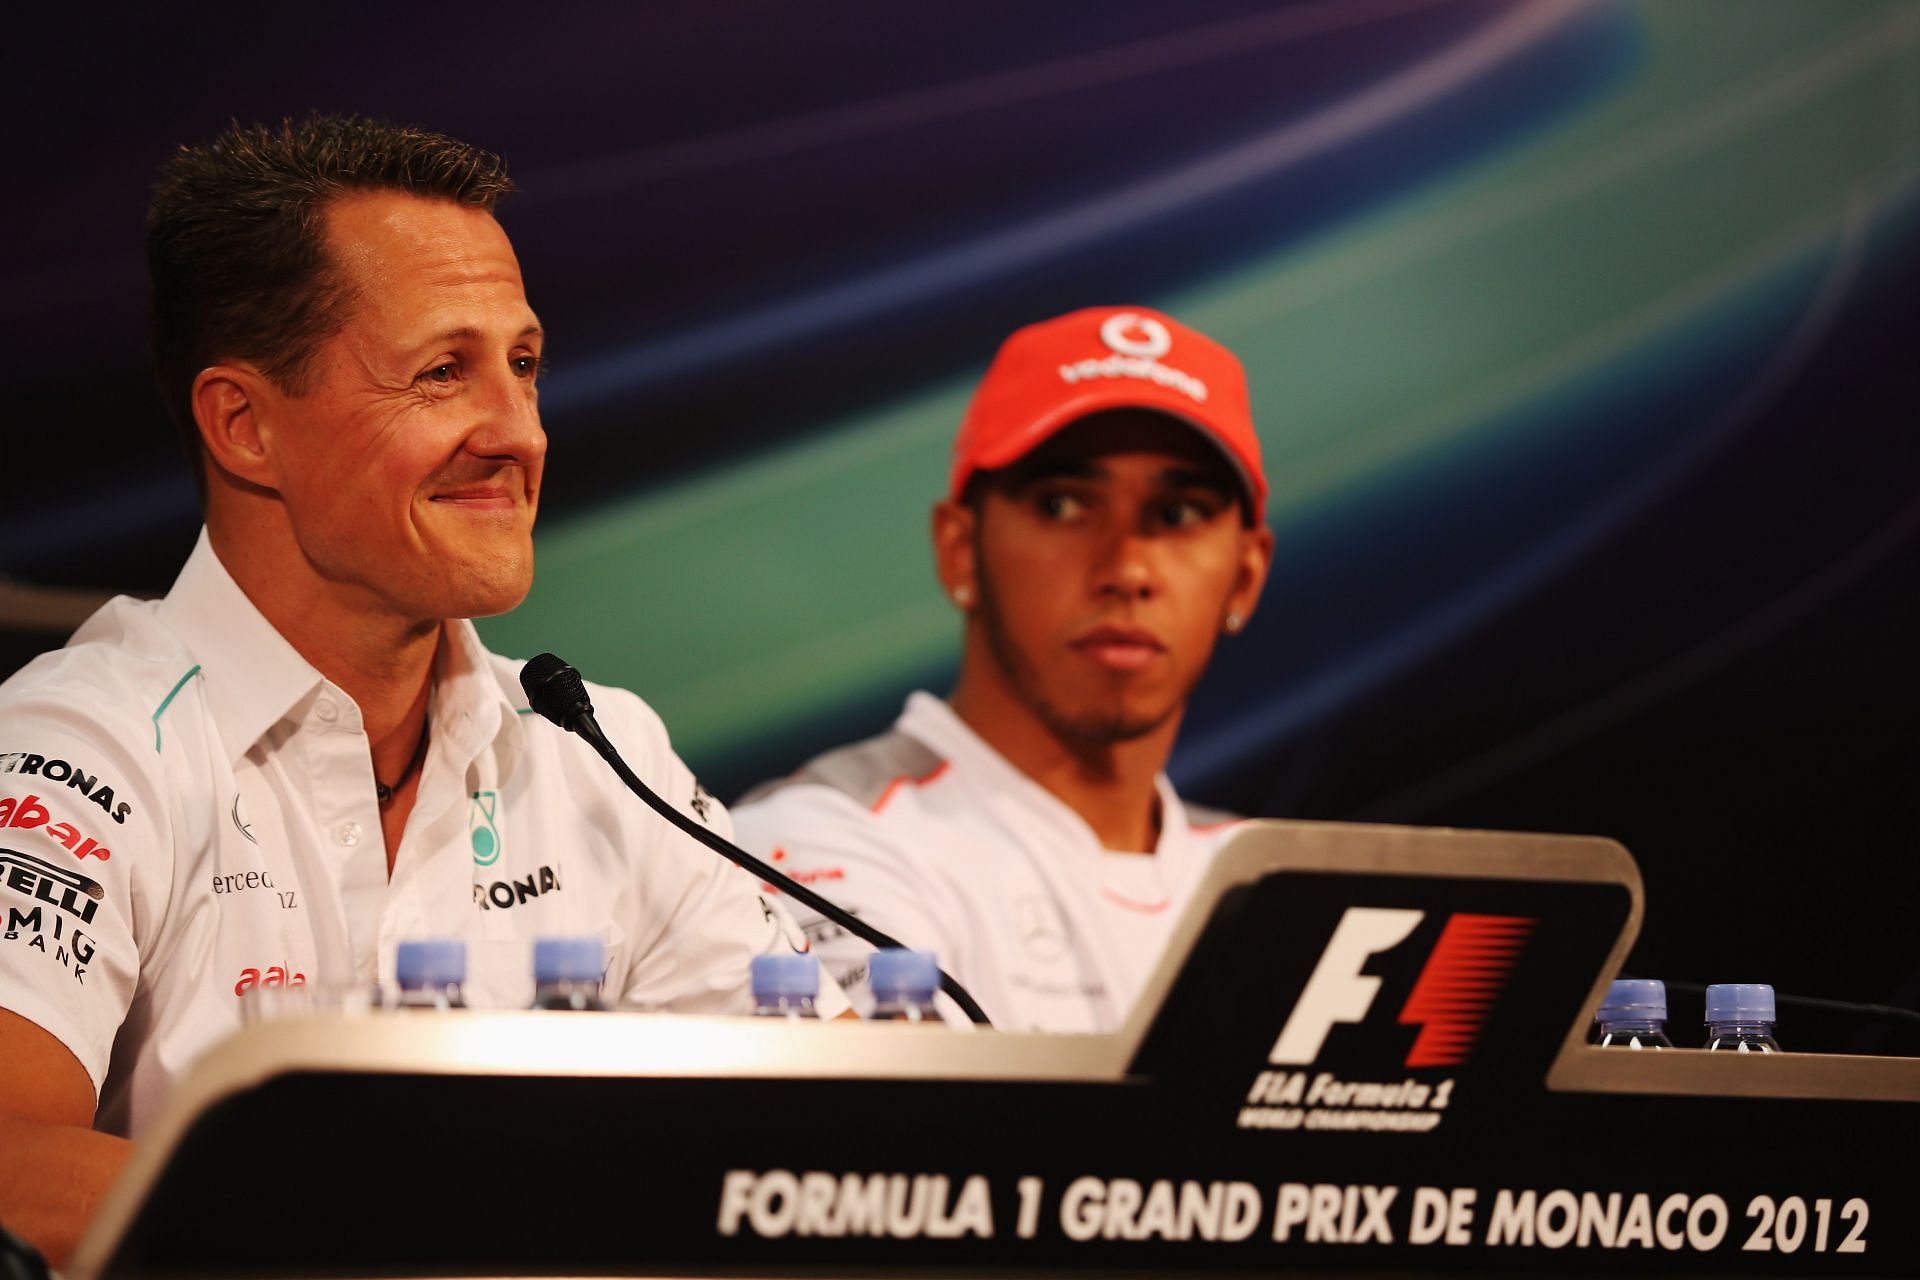 Monaco F1 Grand Prix - Previews